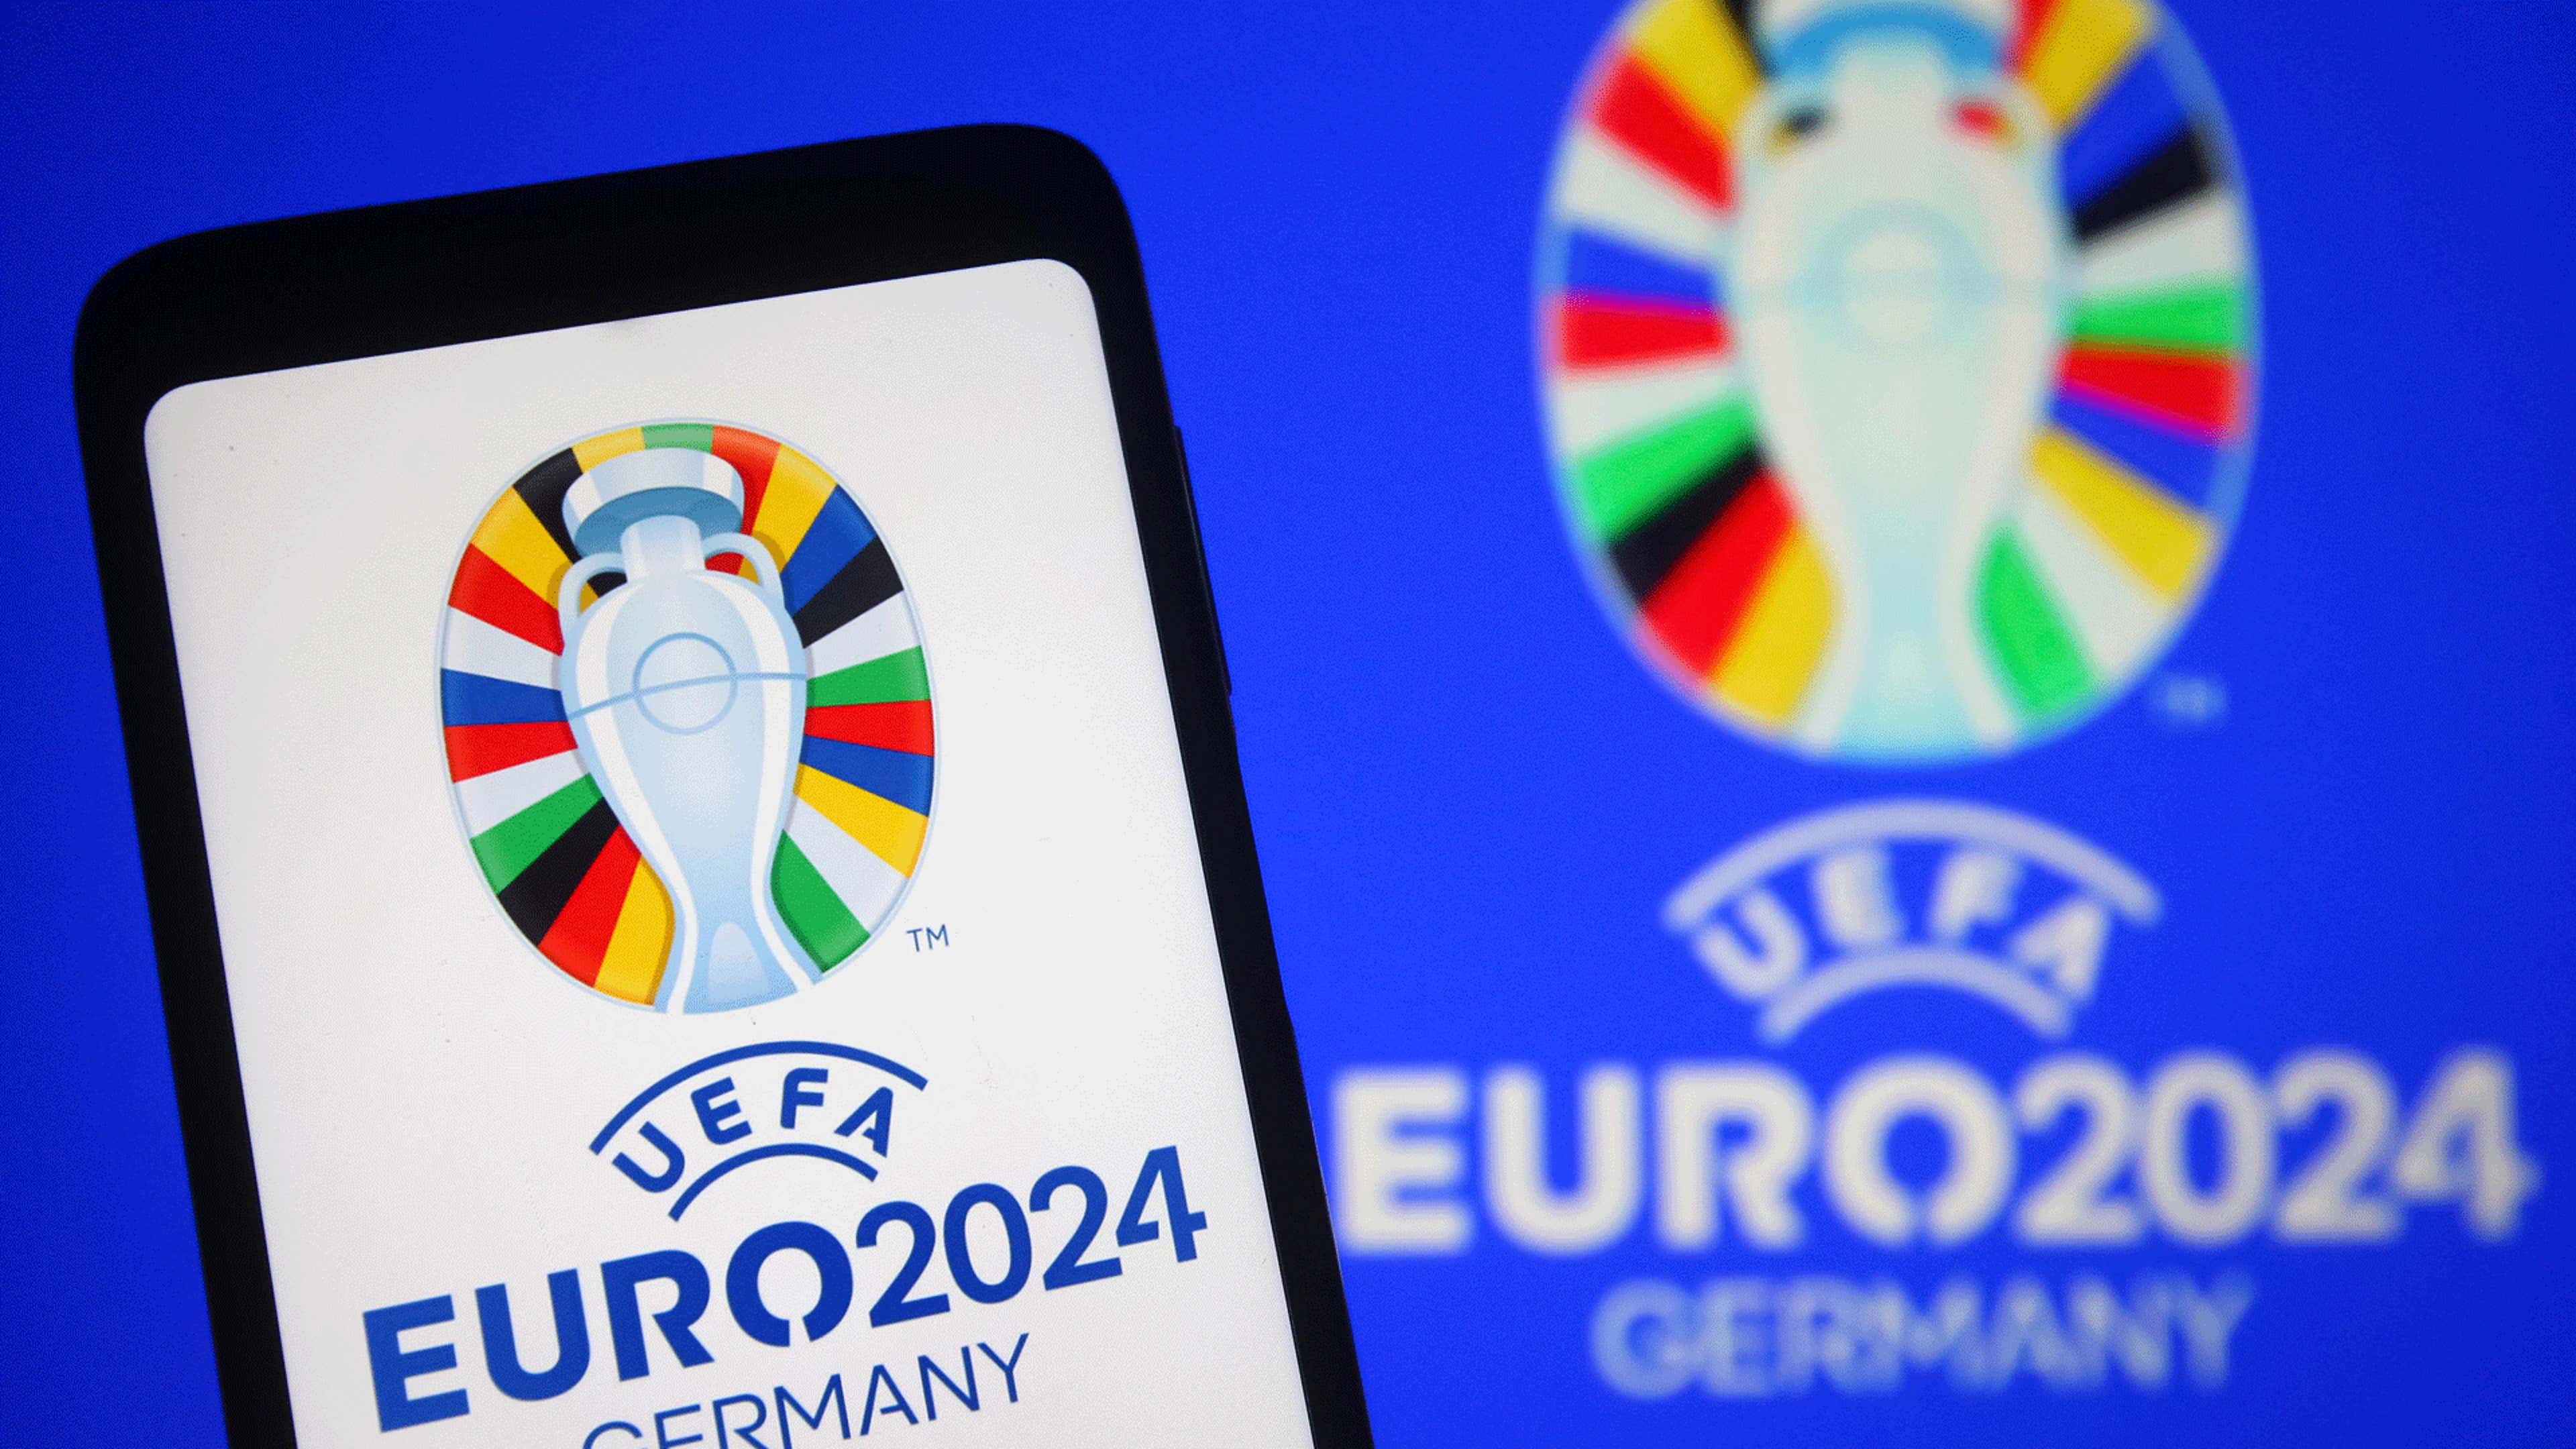 Отборочные евро 24. Евро 2024. Euro 2024 Germany. Чемпионат Европы 2024. UEFA Euro 2024.